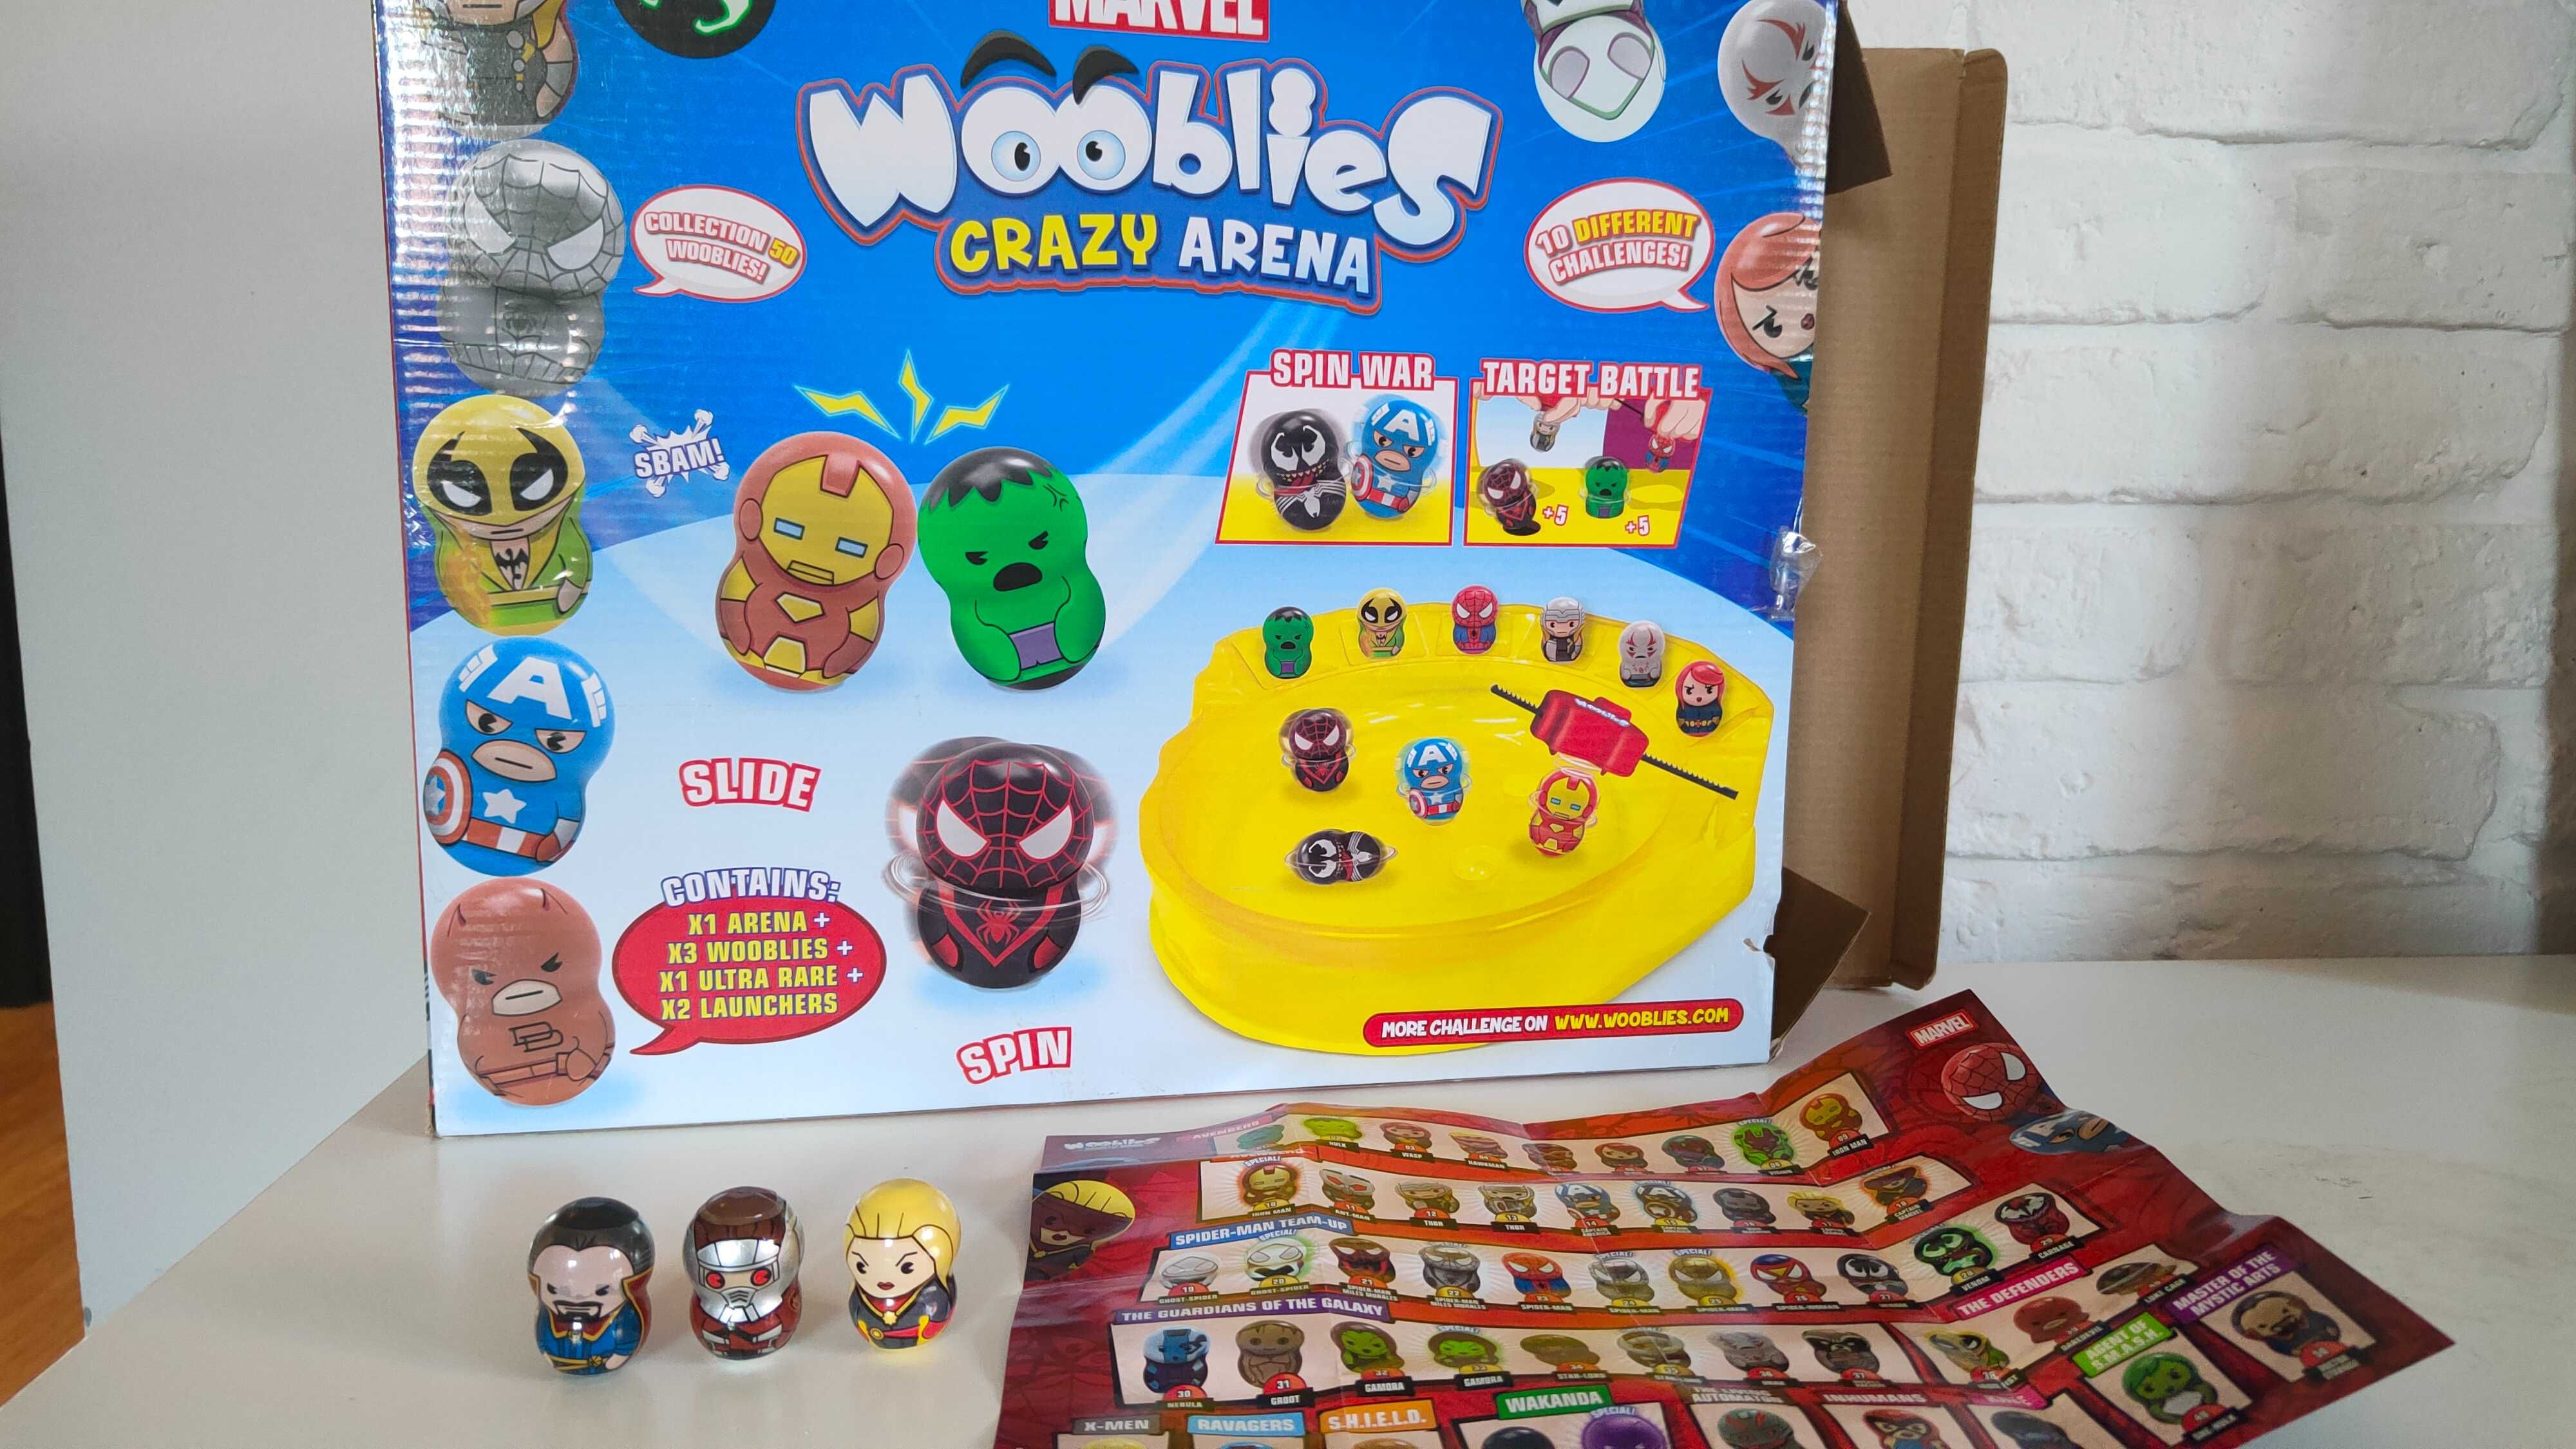 Wooblies Marvel Crazy Arena!